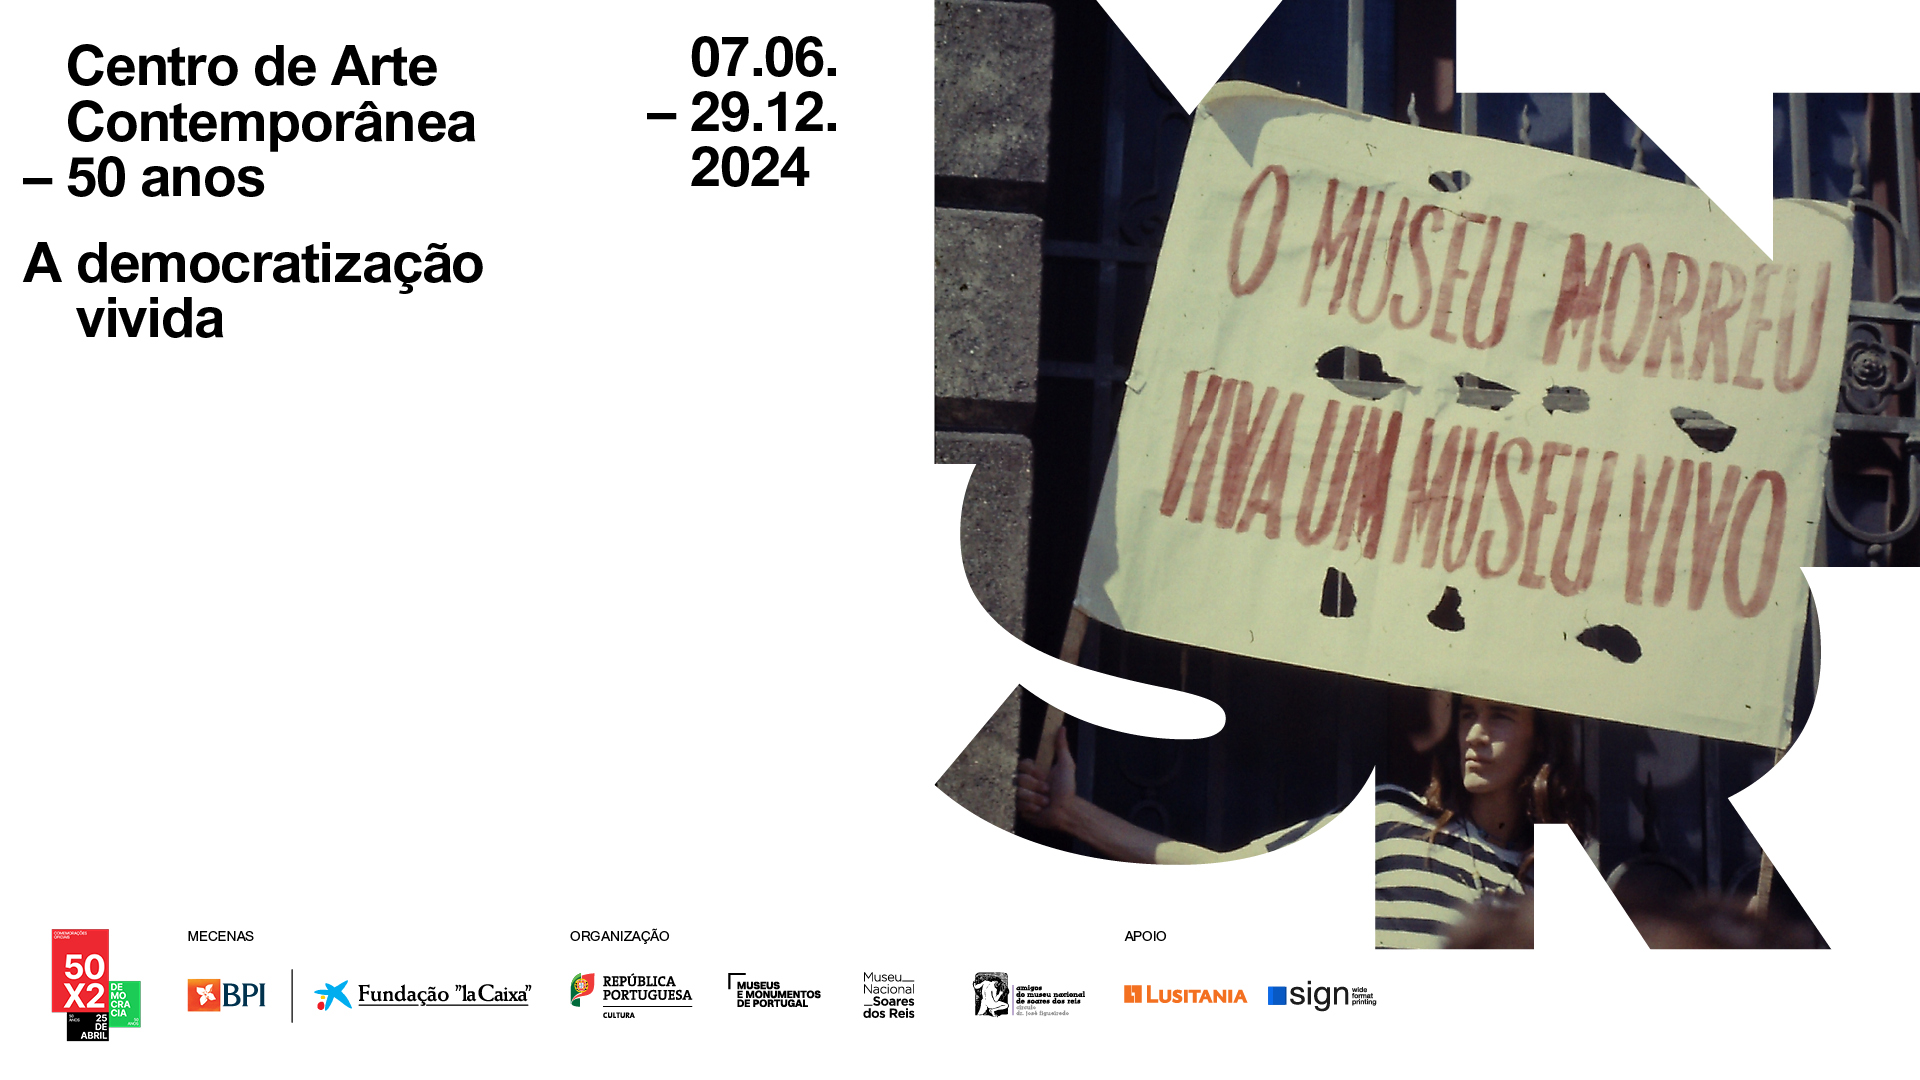 Capa Oficial do Evento Centro de Arte Contemporânea - 50 anos: A Democratização Vivida